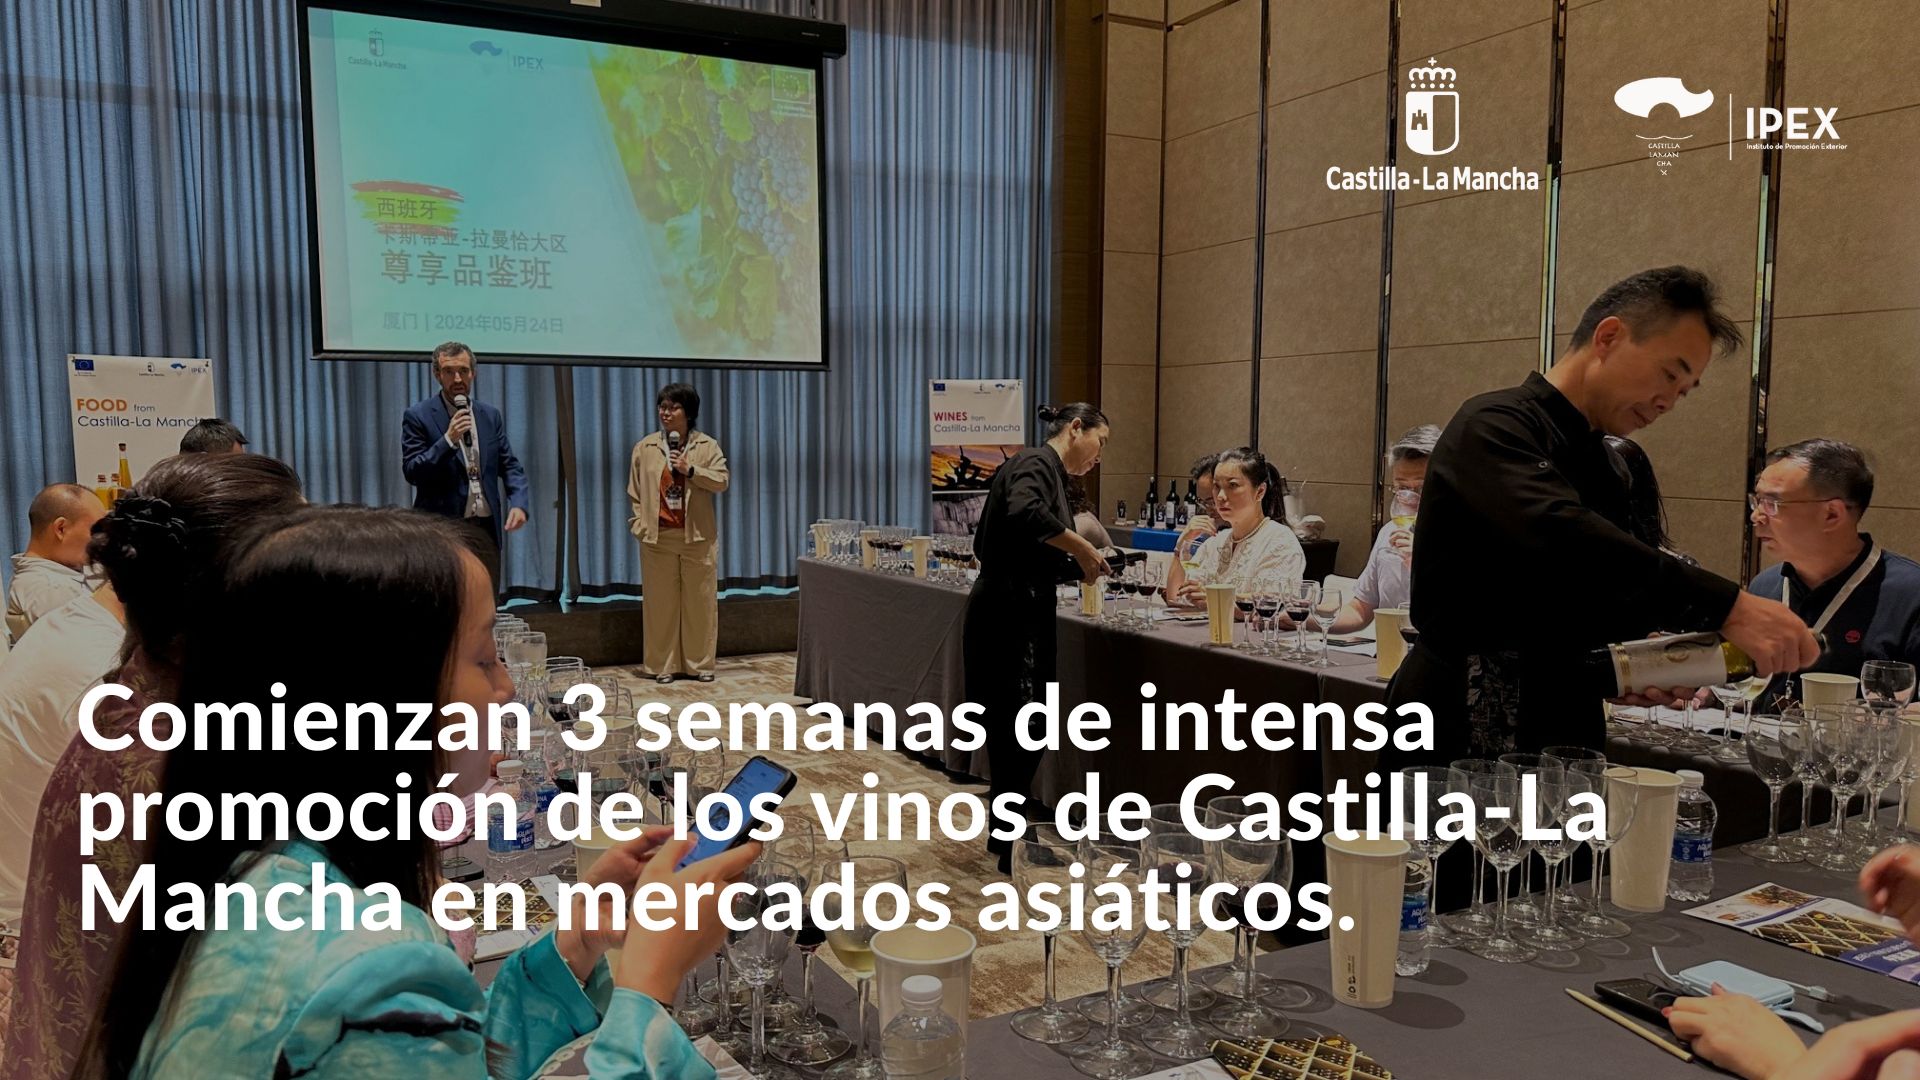 Comienzan 3 semanas de intensa promoción de los vinos de Castilla-La Mancha en mercados asiáticos.